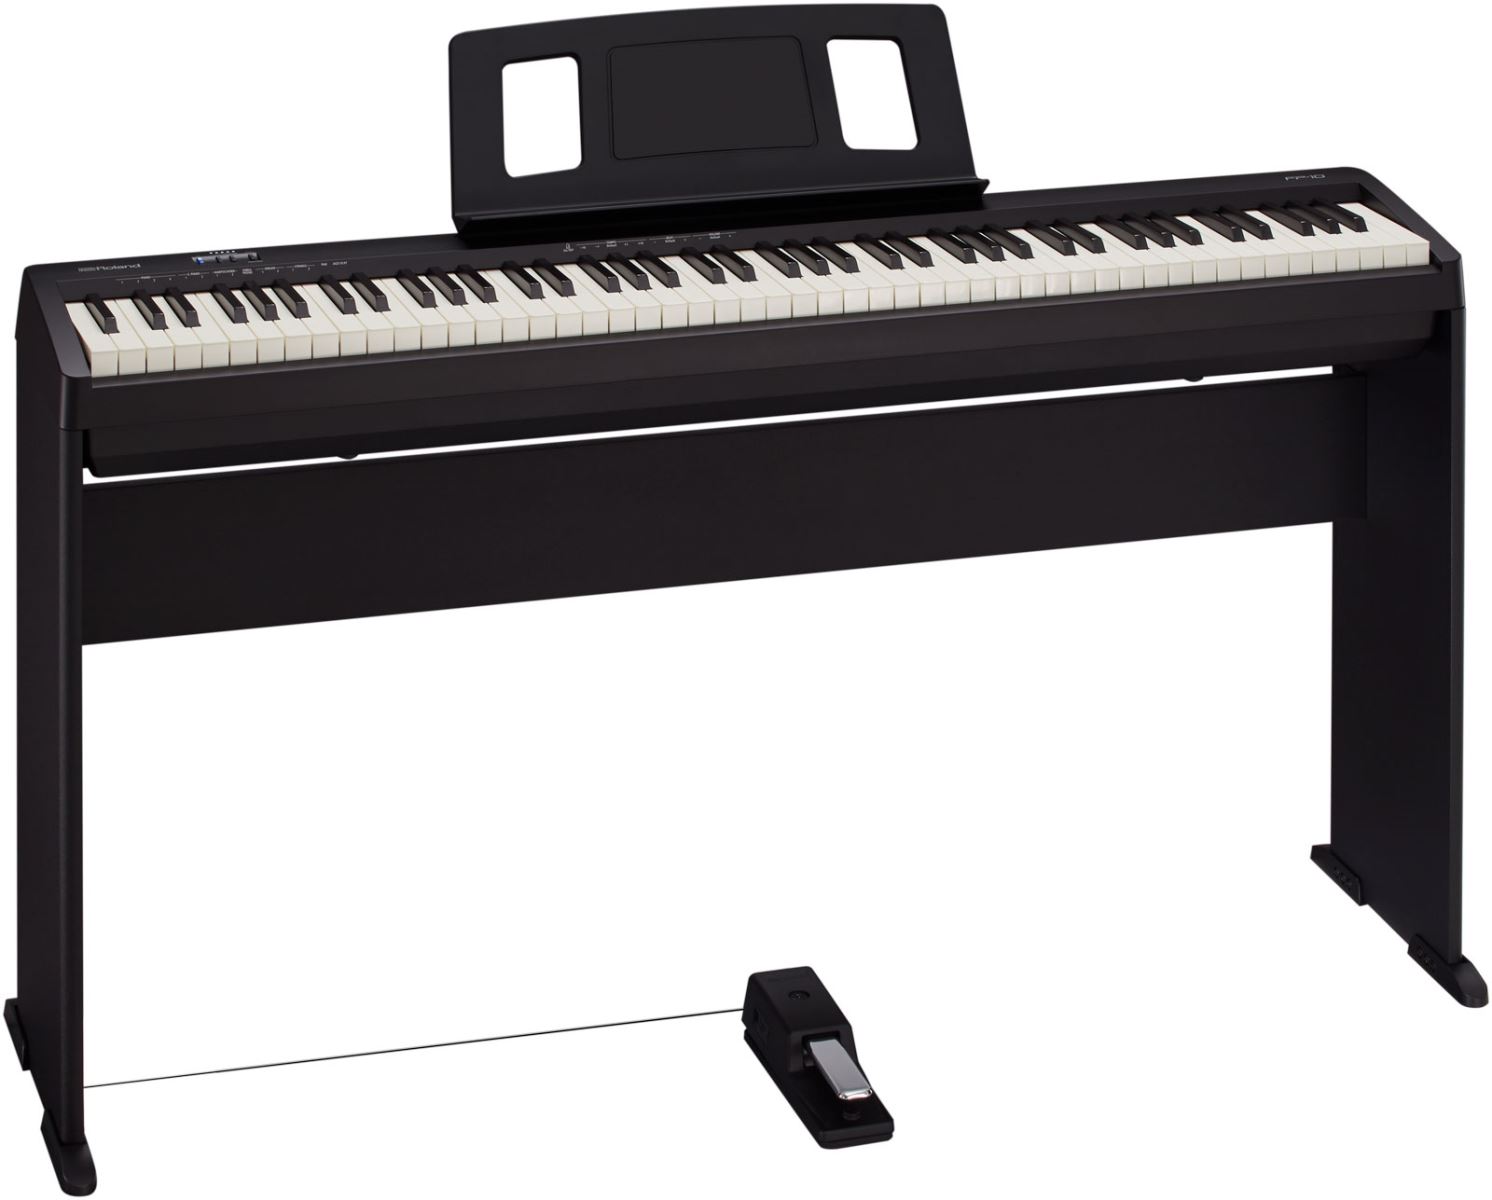 Đàn Piano điện có dễ mua hay không? Cần lưu ý những gì?